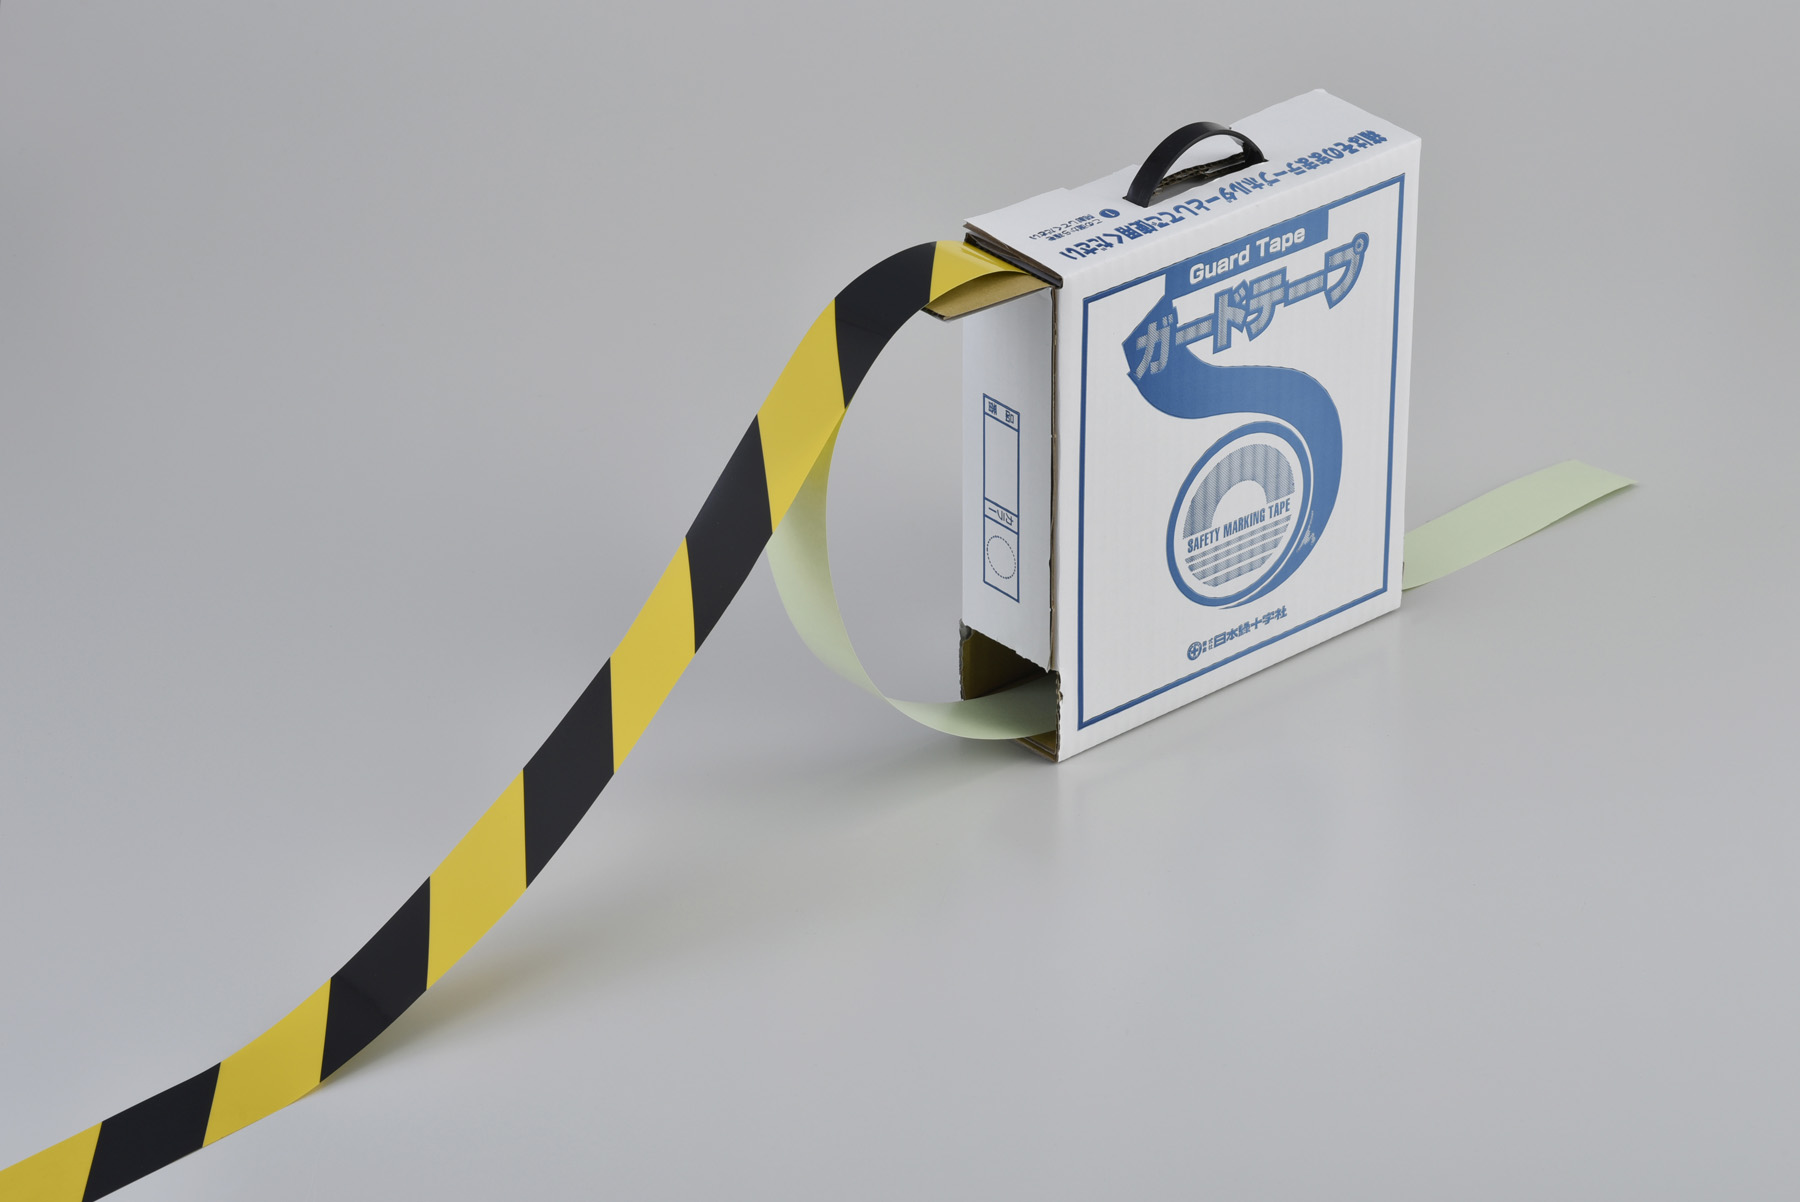 ガードテープ 黄/黒 148062 GT-501TR,（安全標識・安全用品 日本緑十字